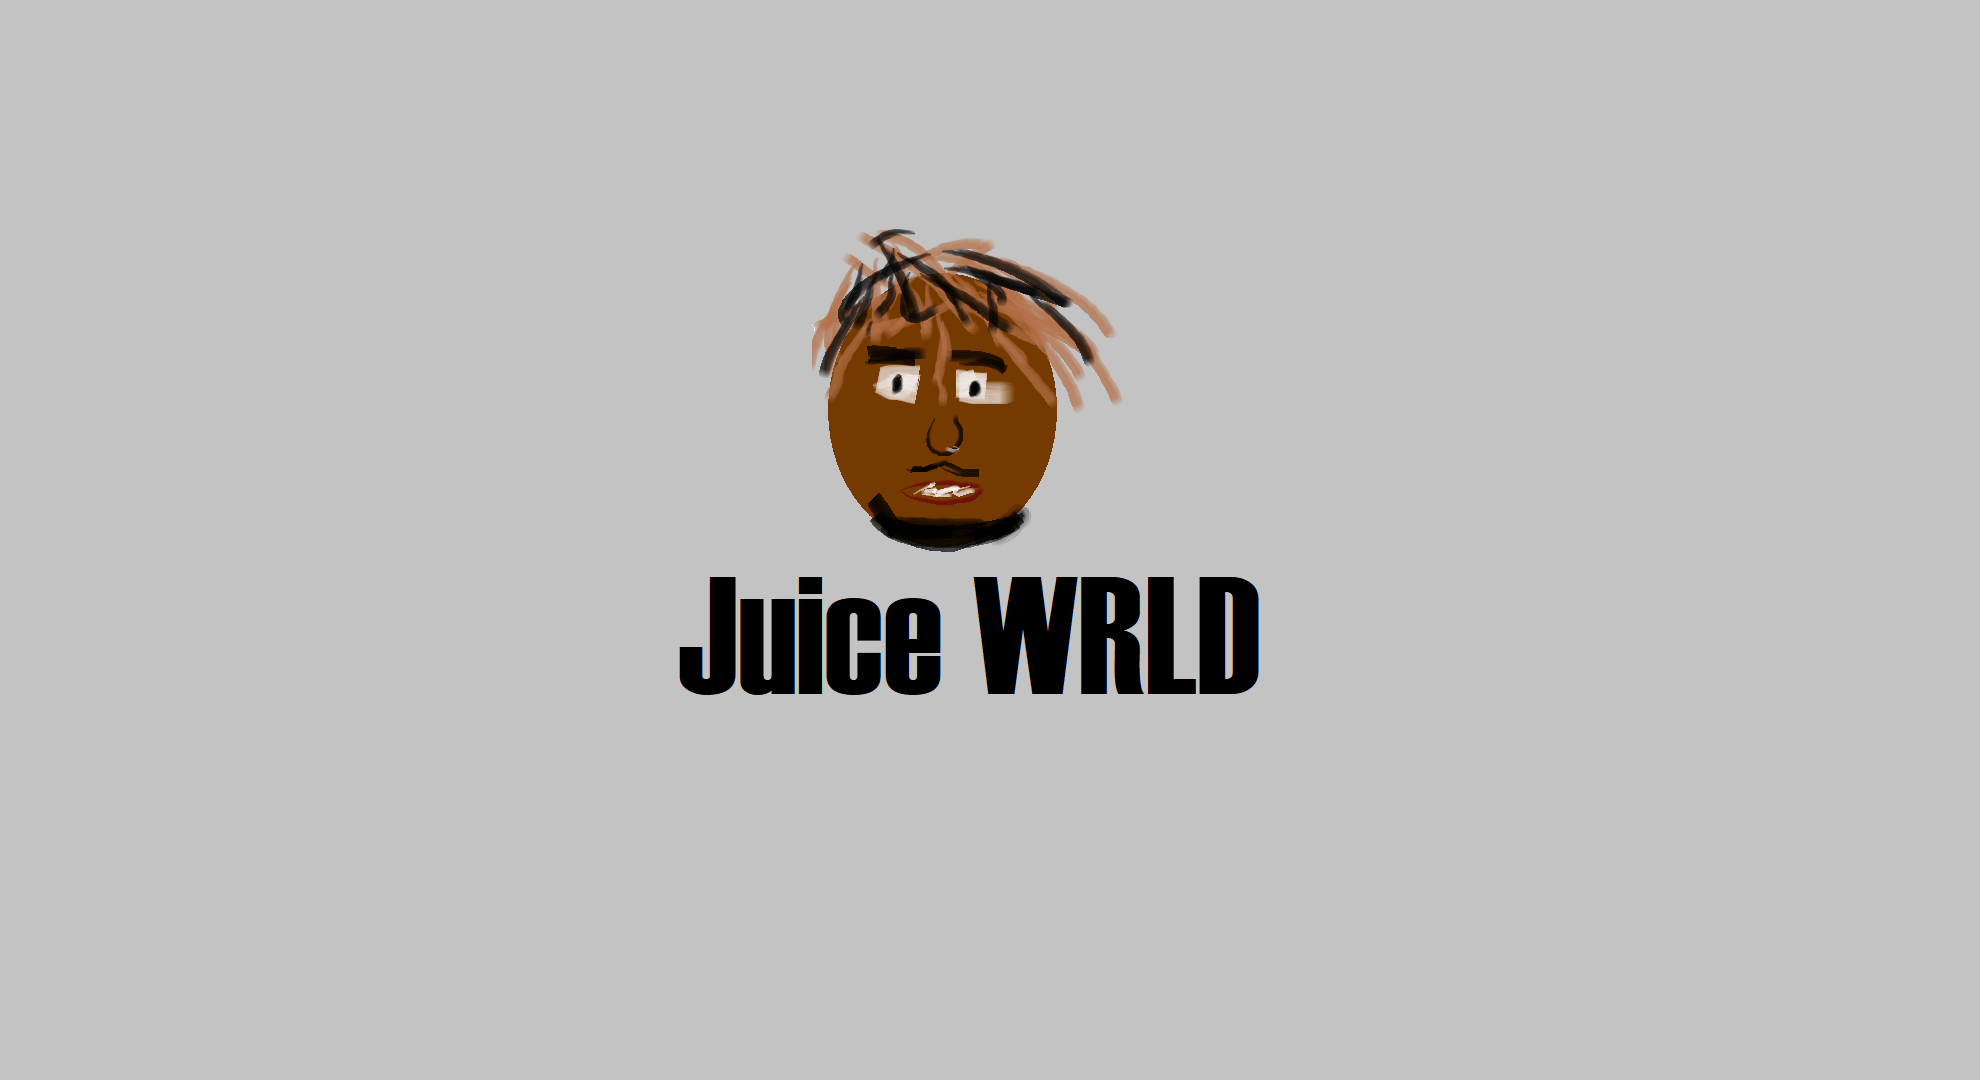 I drew Juice WRLD in paint